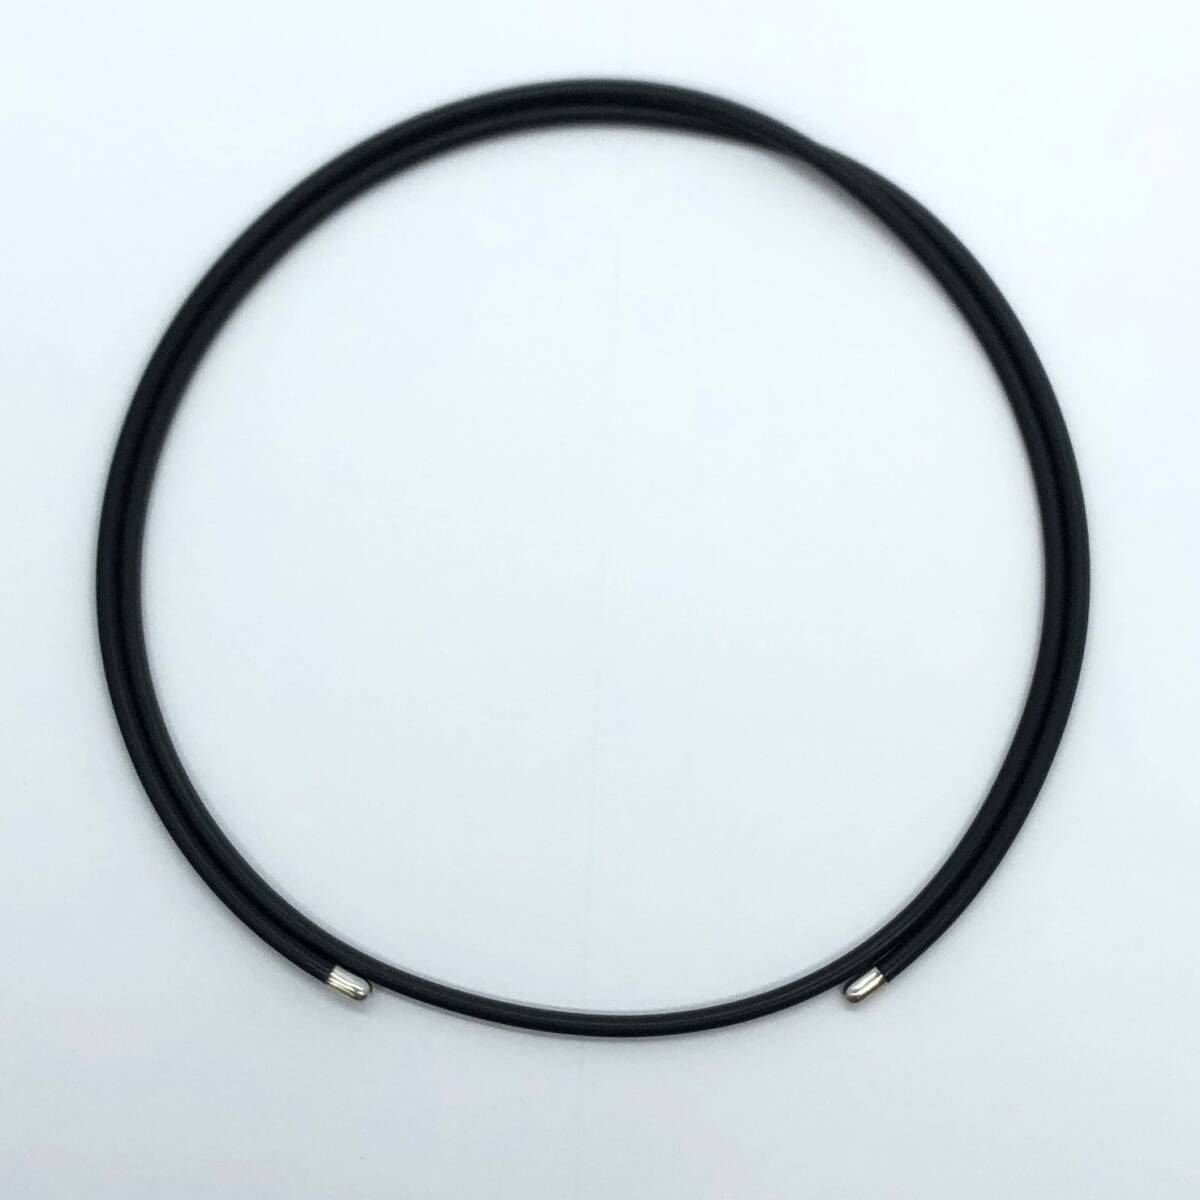 磁気ネックレス ブラック×シルバー 金具 PAT K18 刻印 約77cm 約16.8g 箱付き マグネット式 健康グッズ アクセサリー #9168_画像3